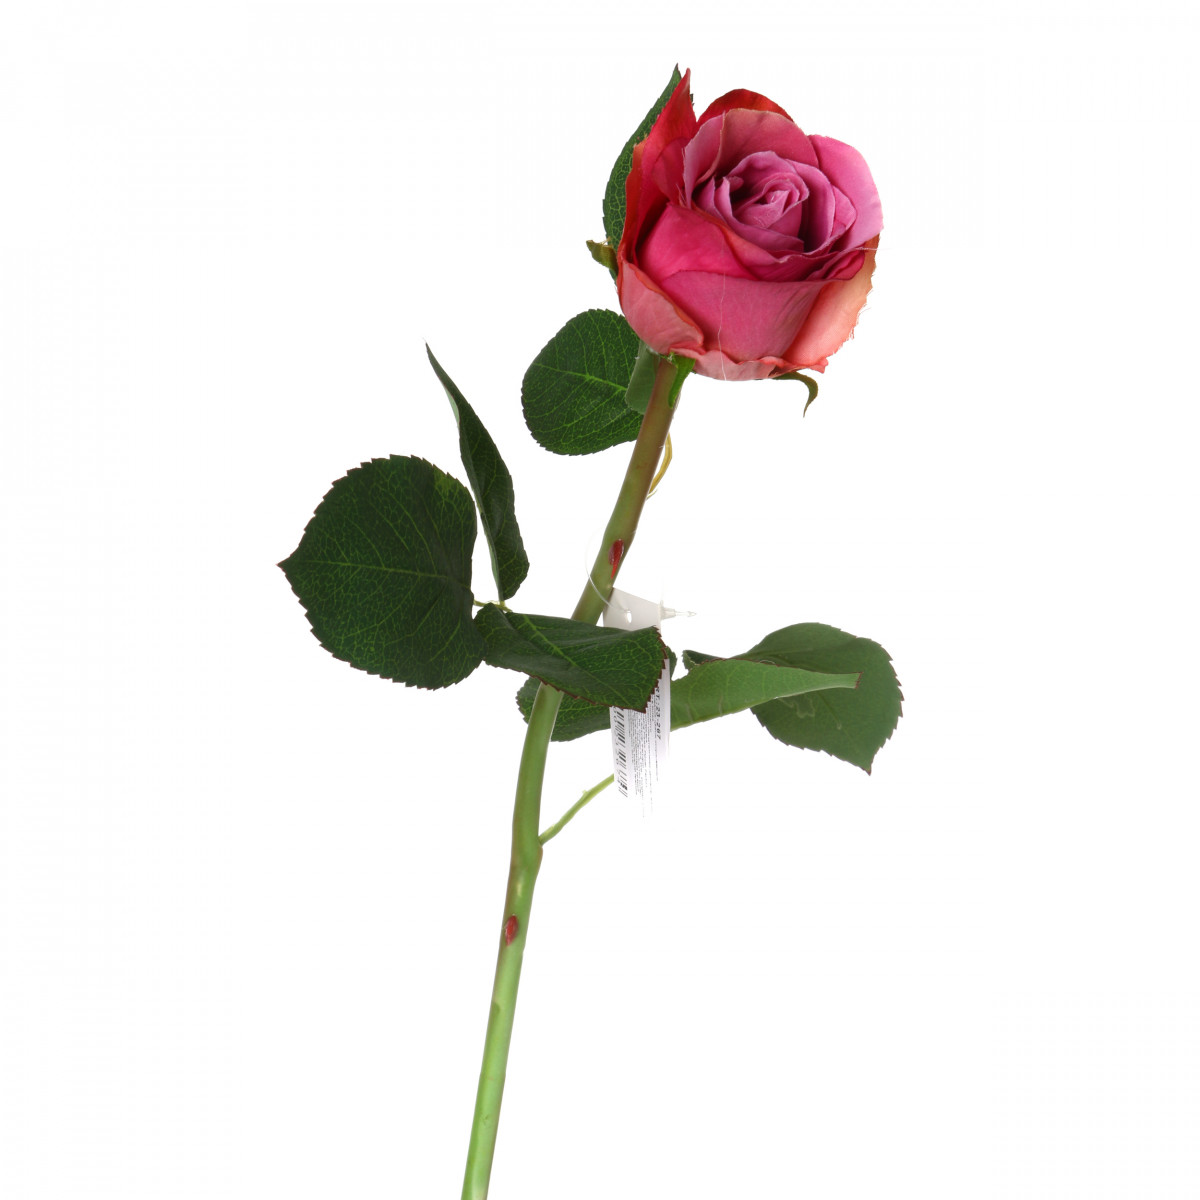 Искусственный цветок Mellony  (50 см), размер 50 см arm303079 Искусственный цветок Mellony  (50 см) - фото 1